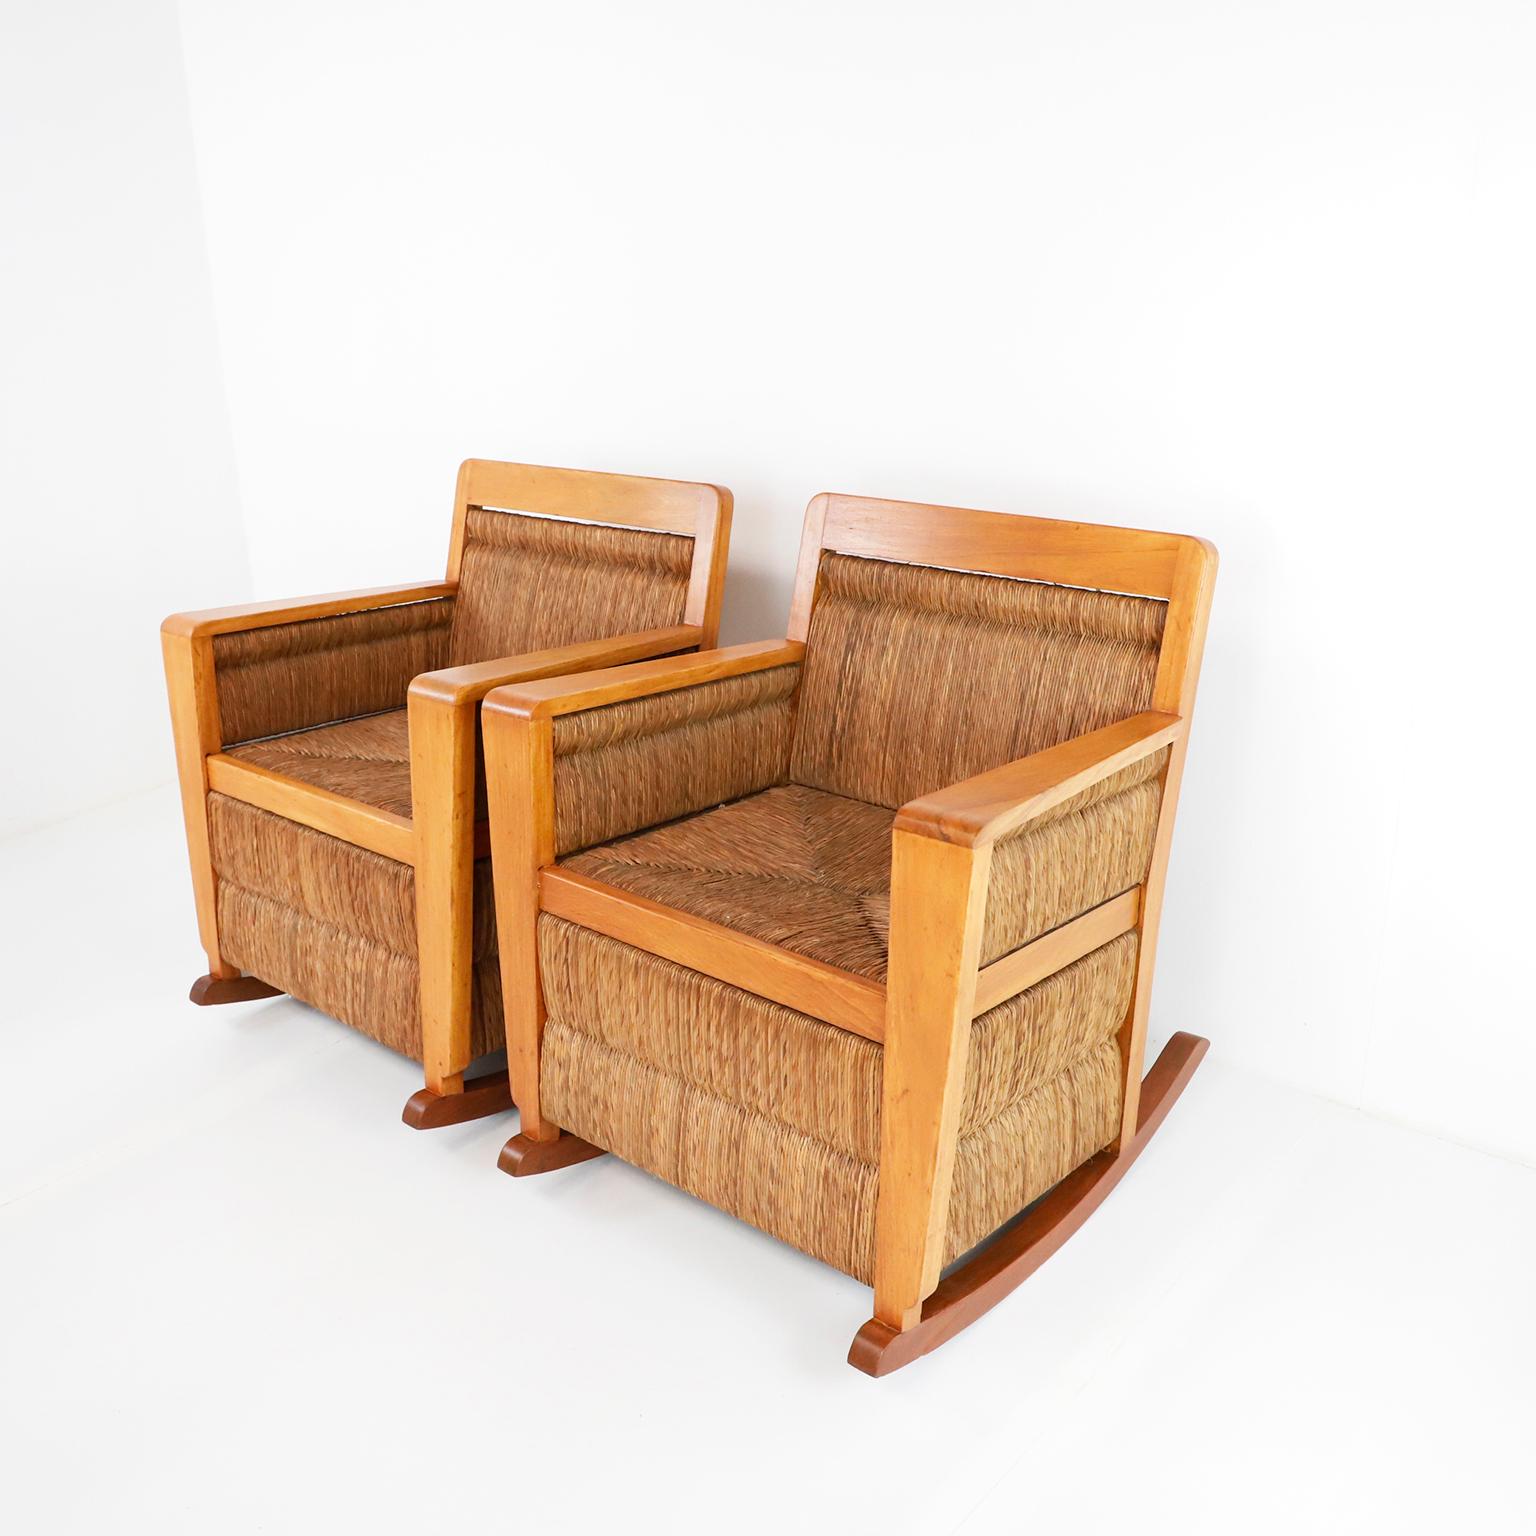 Paire de fauteuils à bascule mexicains tissés de style moderne du milieu du siècle, fabriqués dans les années 1950 en bois Primavera et en cordes de palmier. Doté d'un cadre moderne simple mais élégant, ce fauteuil à bascule offre un confort